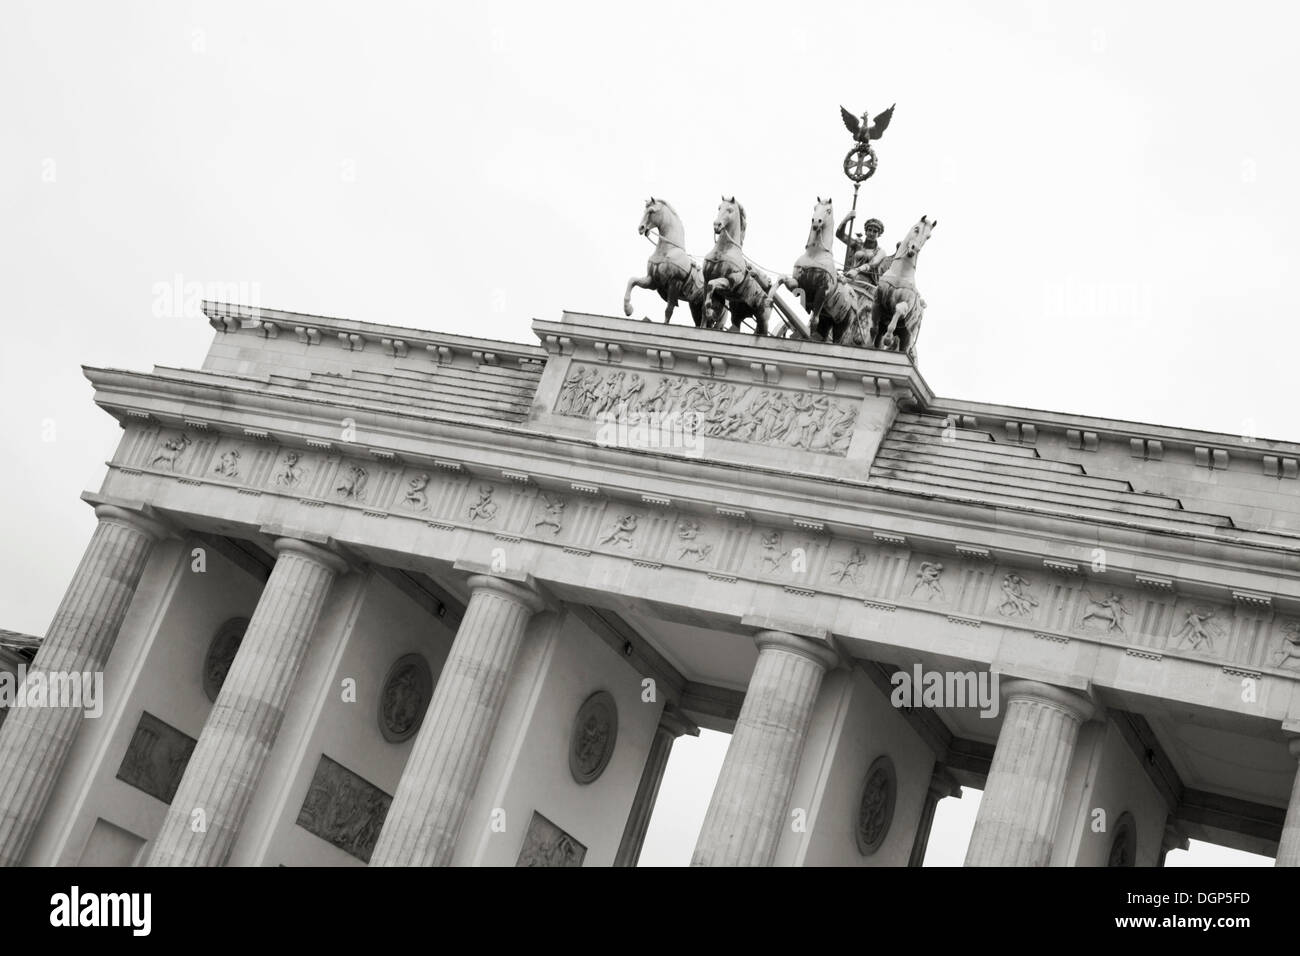 Porte de Brandebourg, Berlin, noir et blanc Banque D'Images